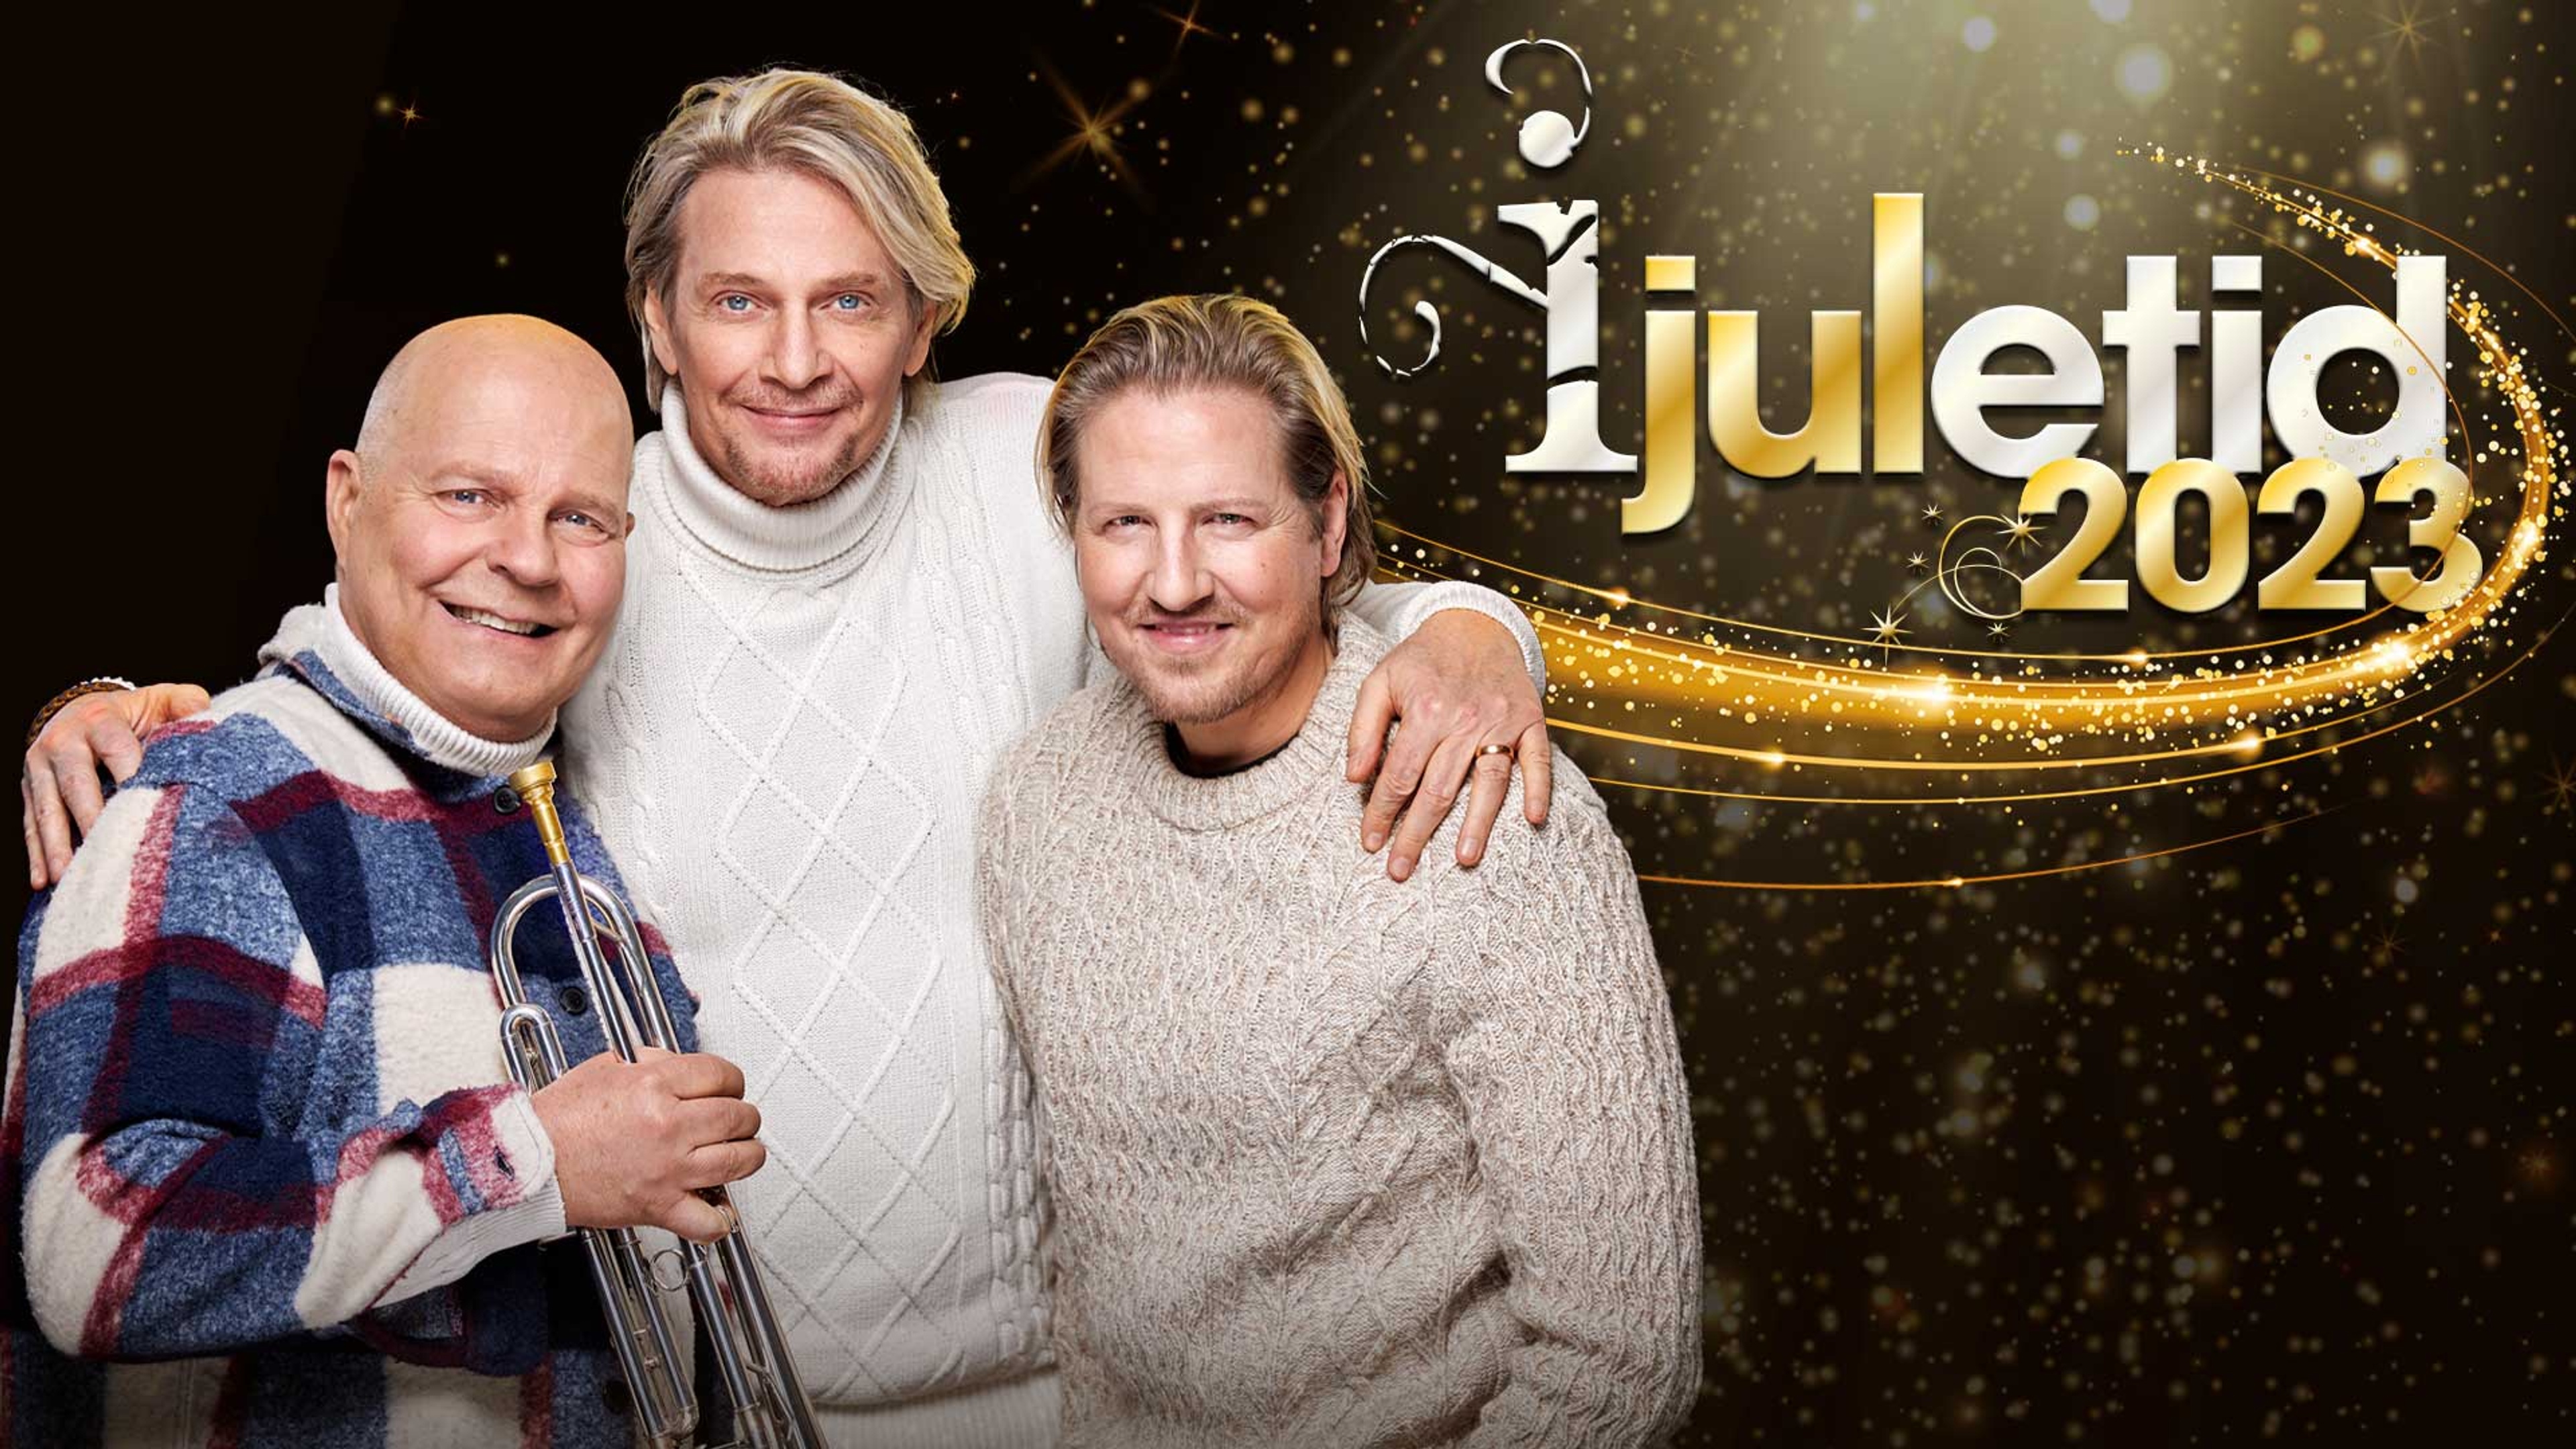 Magnus Johansson, Tommy Nilsson och Marcos Ubeda står och håller om varandra  och ler in i kameran framför en mörk, glittrande bakgrund. Text: I juletid 2023